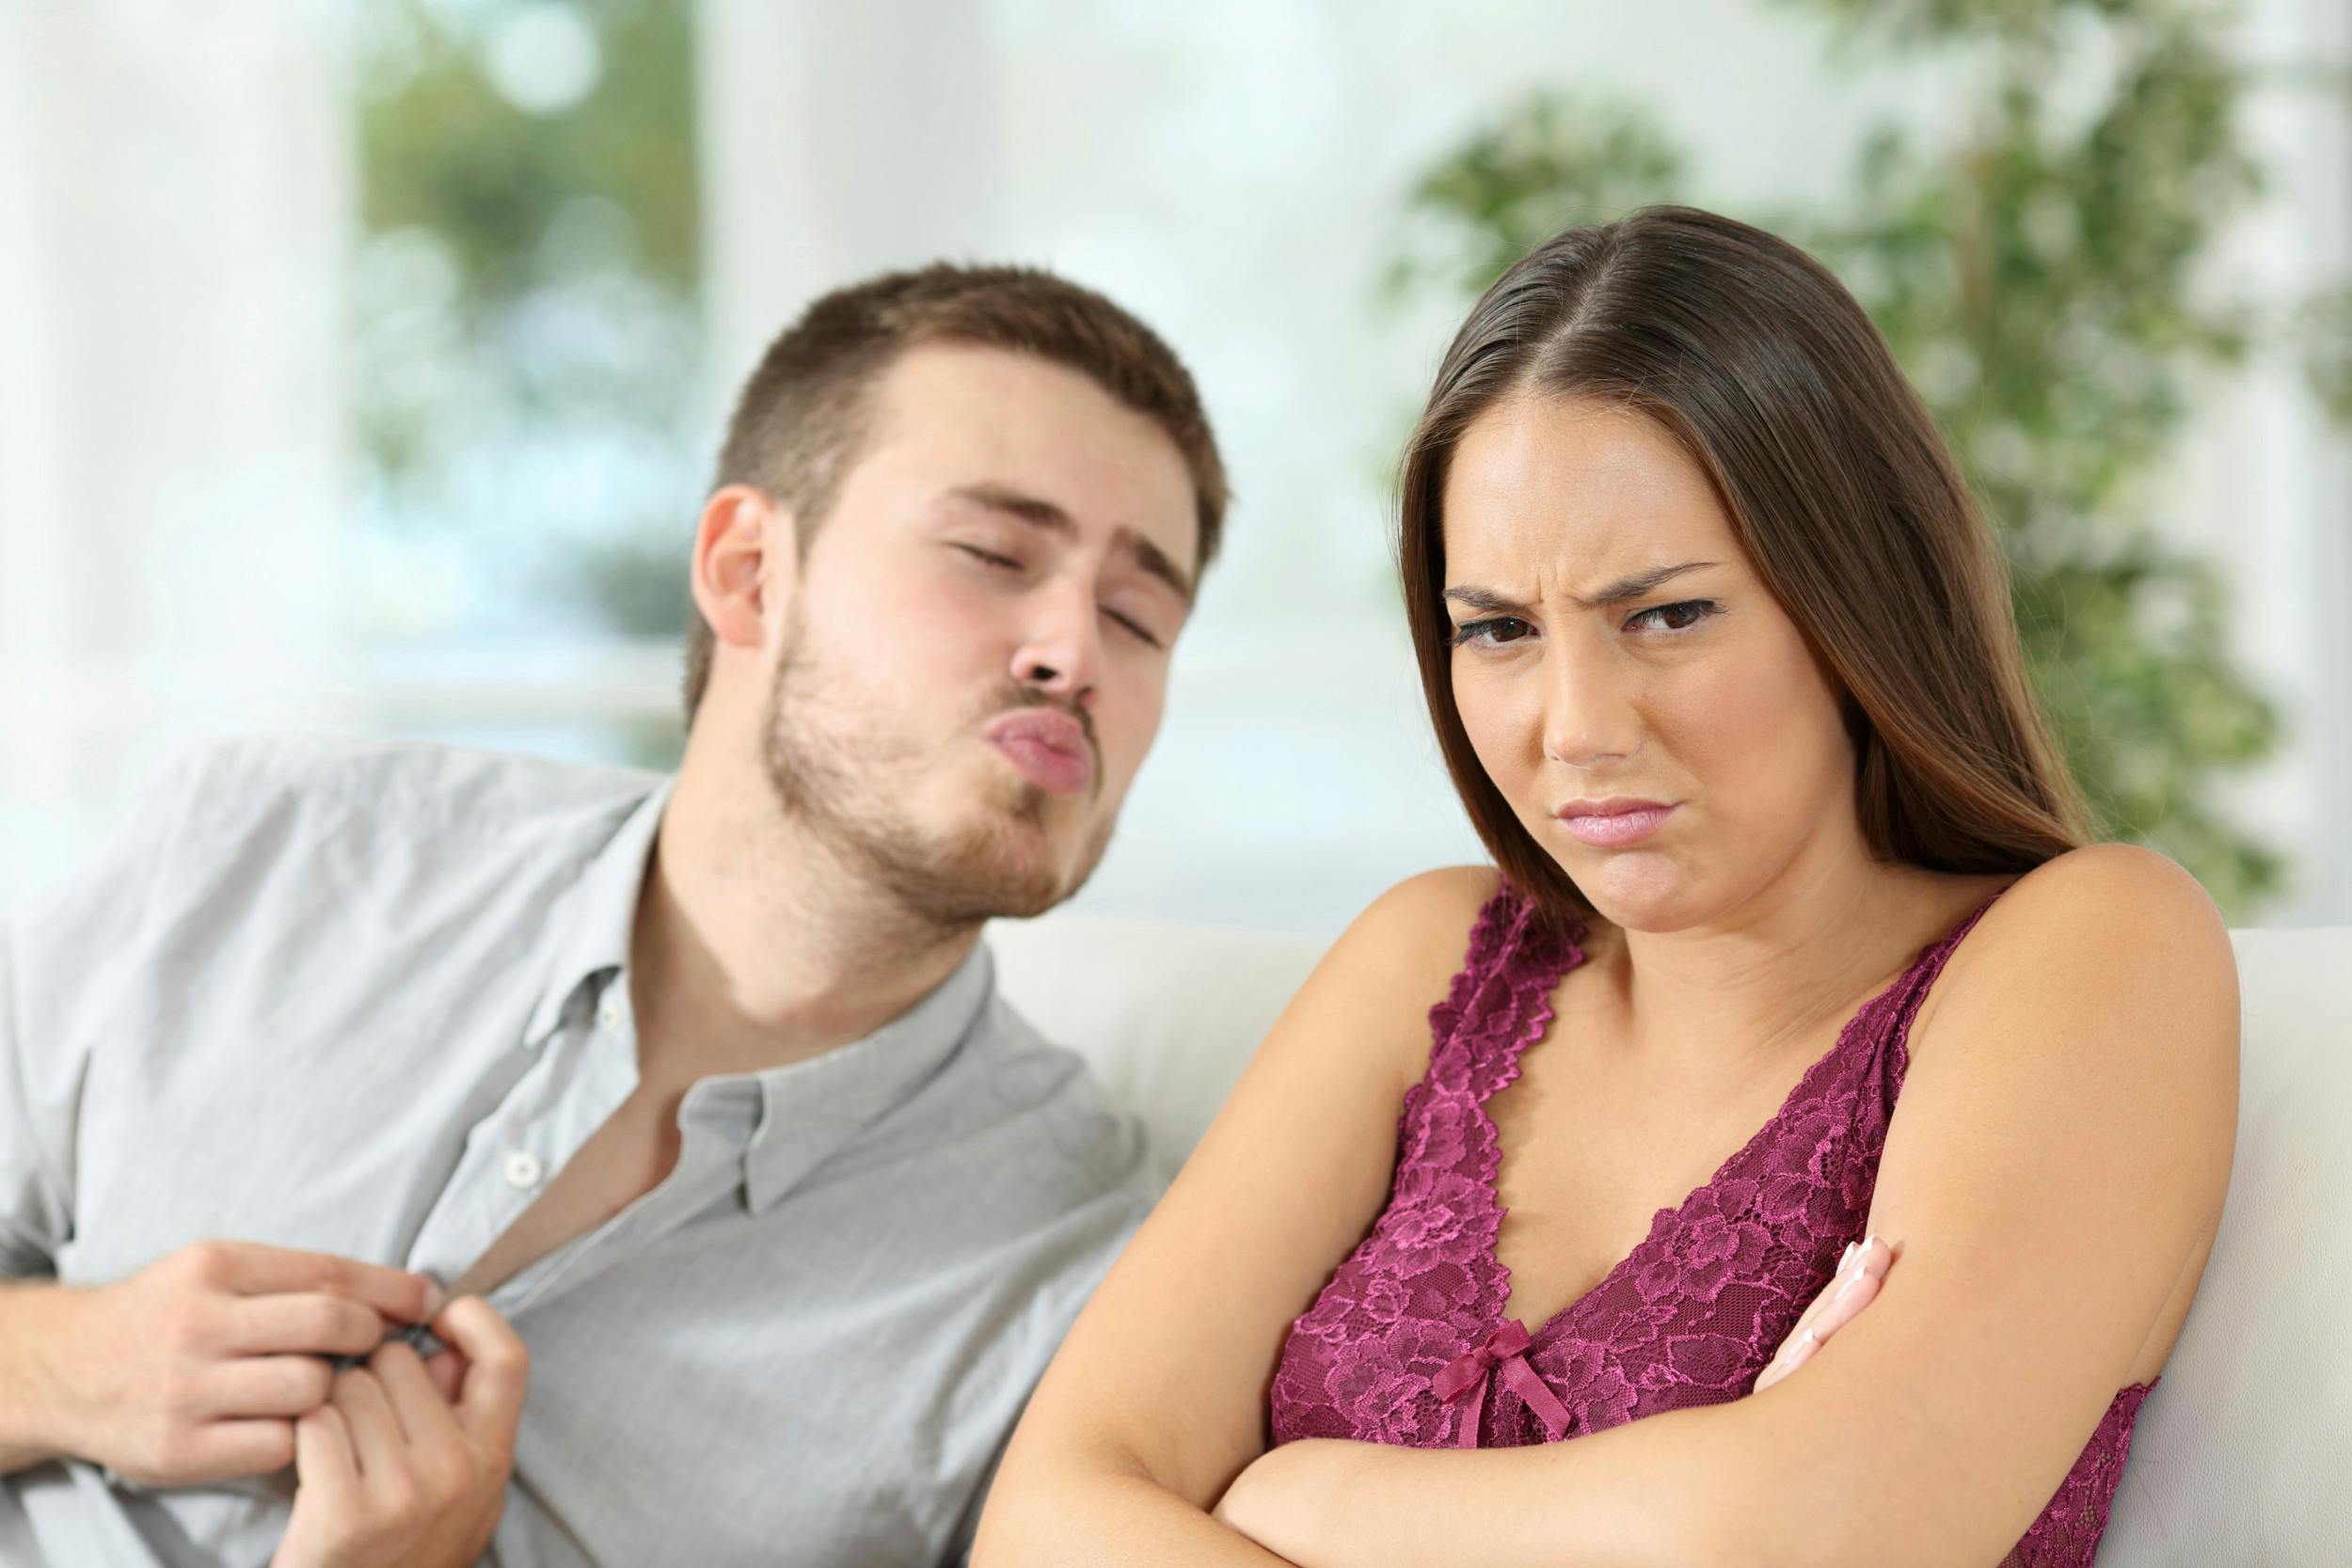 Mand sender kyssemund mod sin kæreste, der ser sur og trist ud